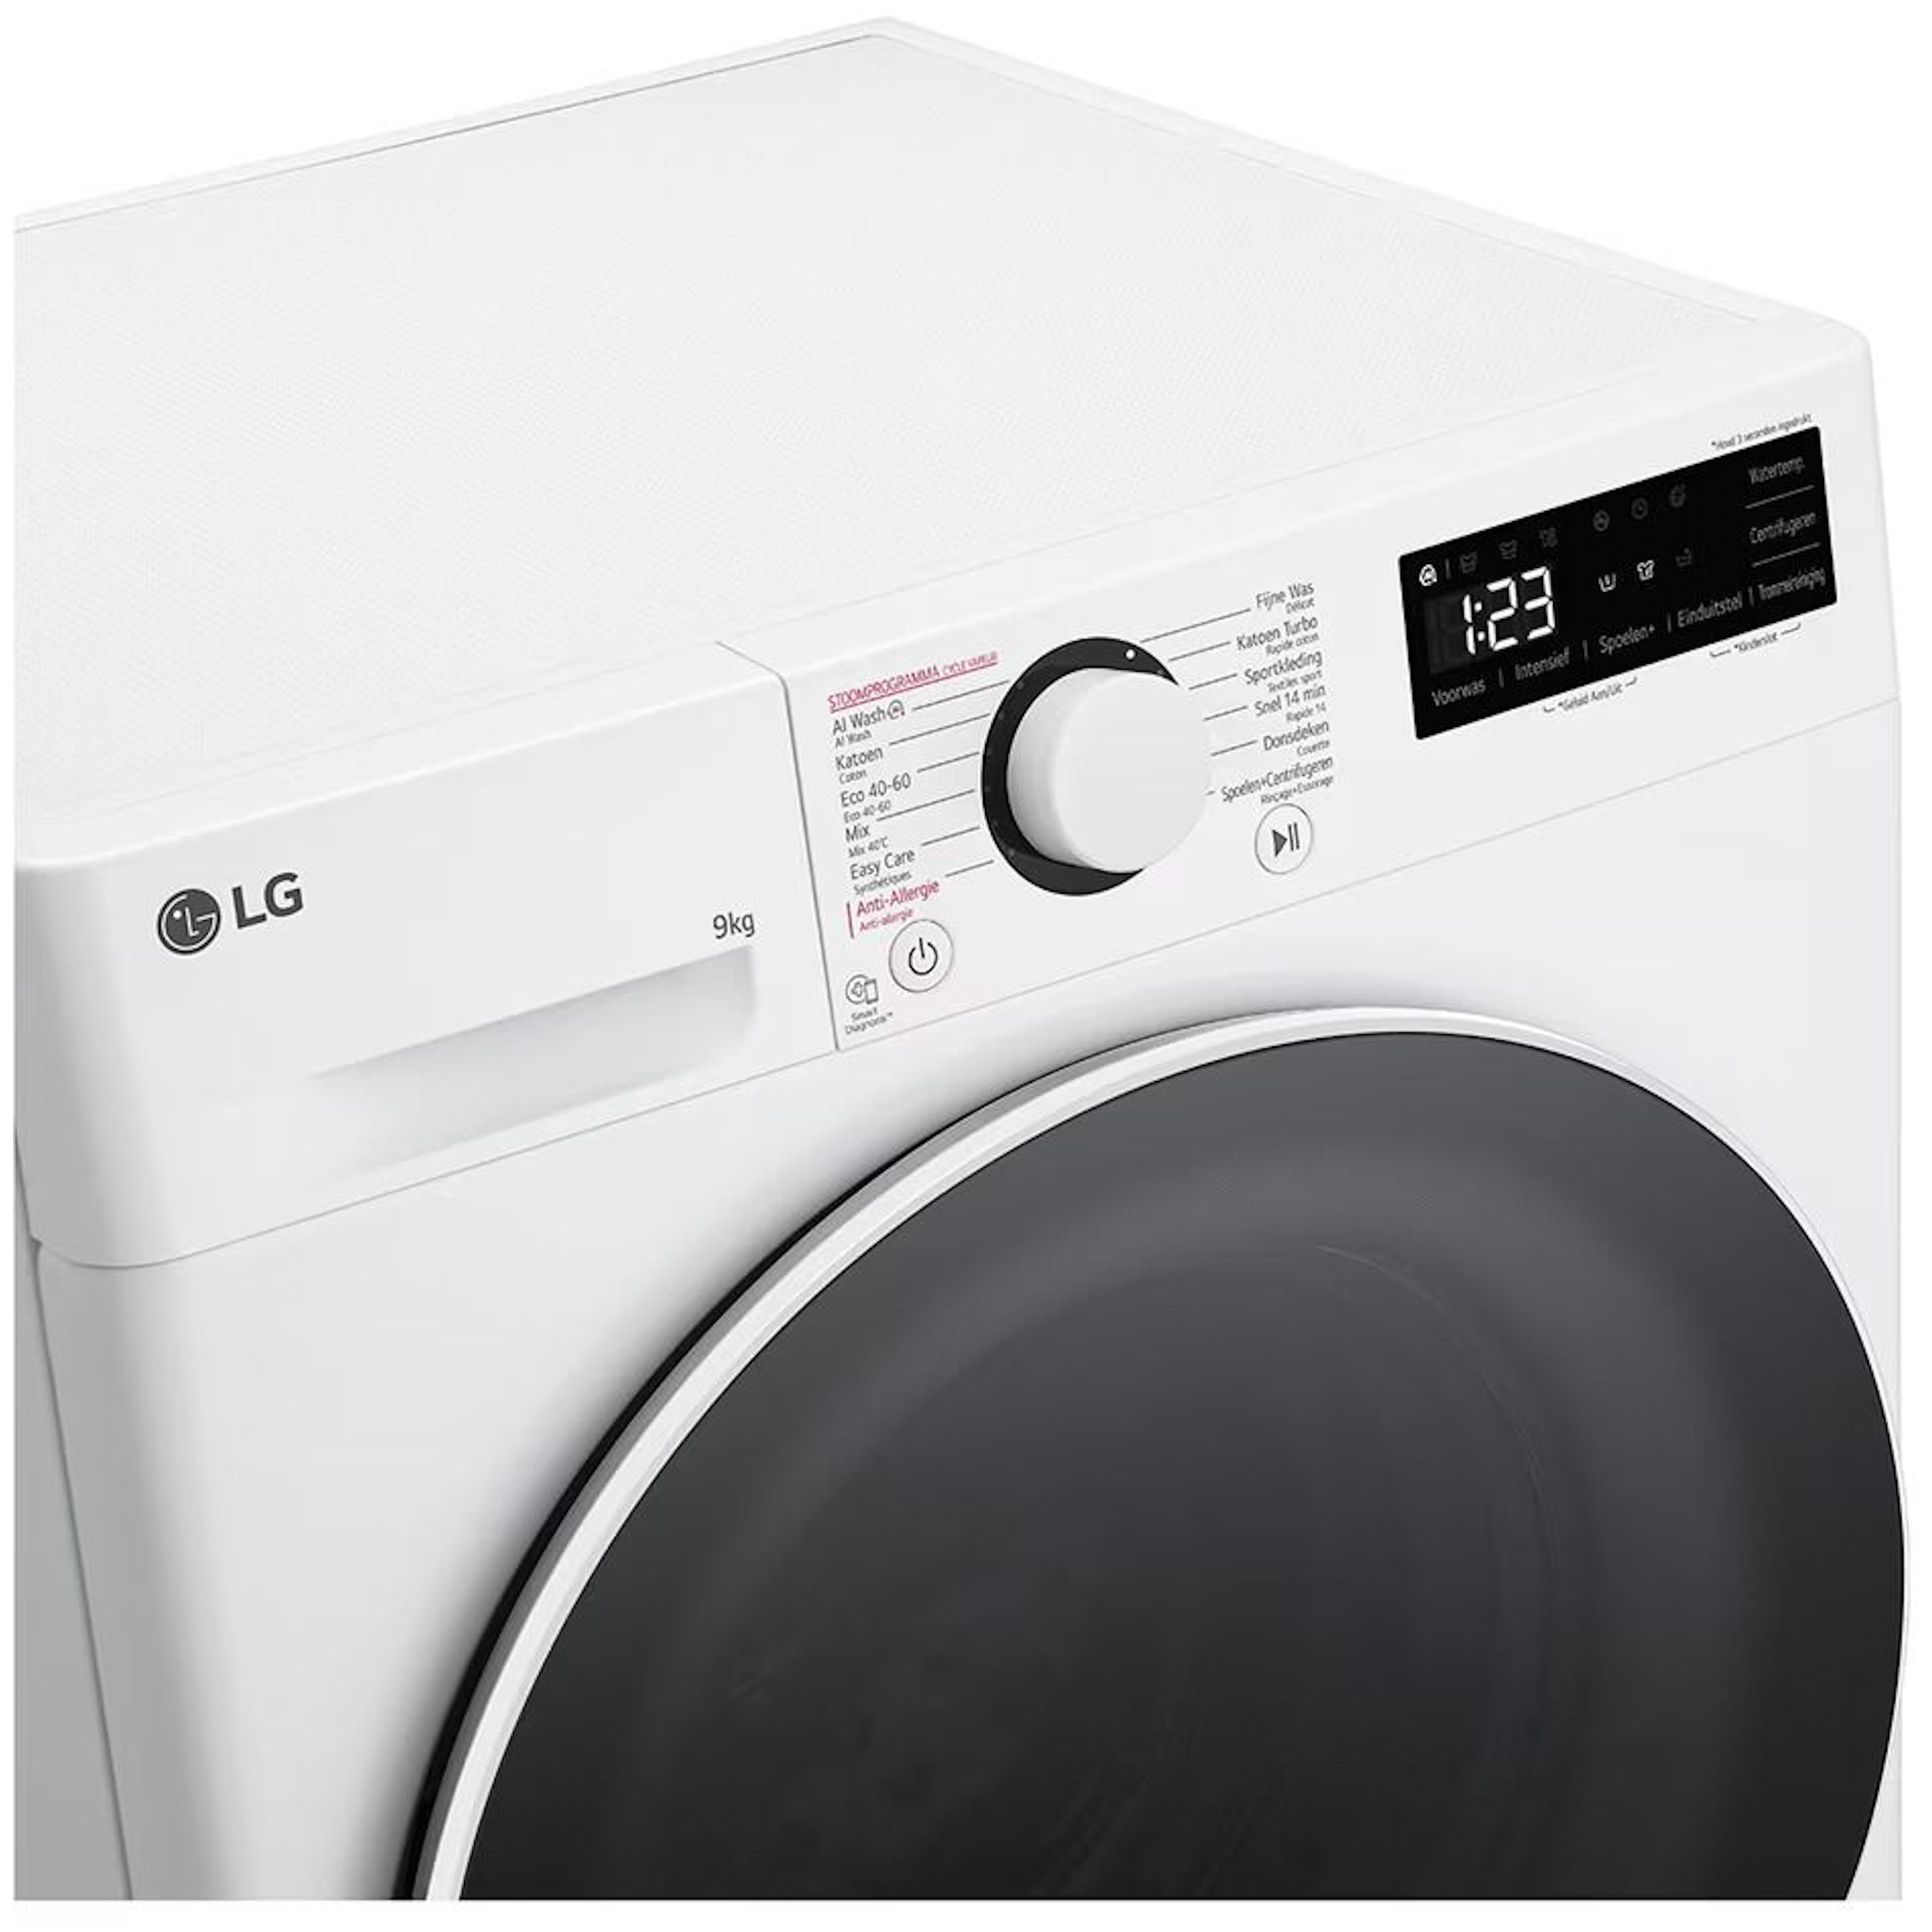 LG wasmachine  GC3R509S0 afbeelding 4